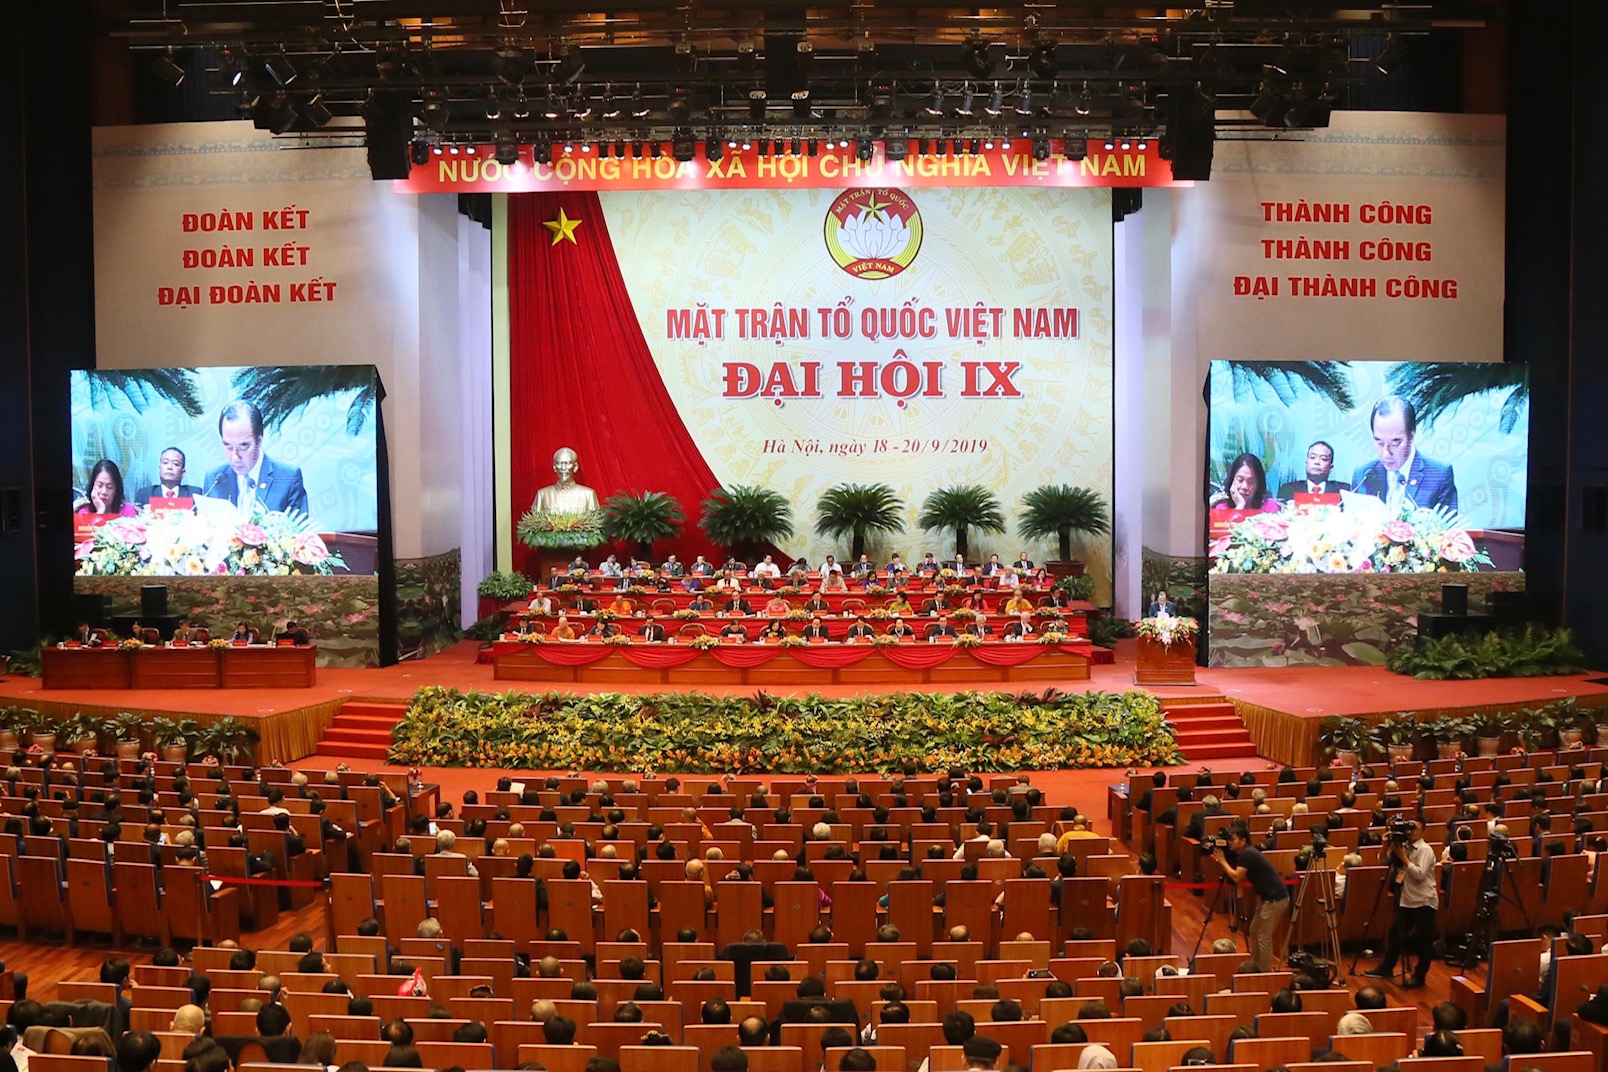 Quyết định 217-QĐ/TW: Quy chế giám sát và phản biện xã hội của Mặt trận Tổ quốc Việt Nam và các đoàn thể chính trị - xã hội 